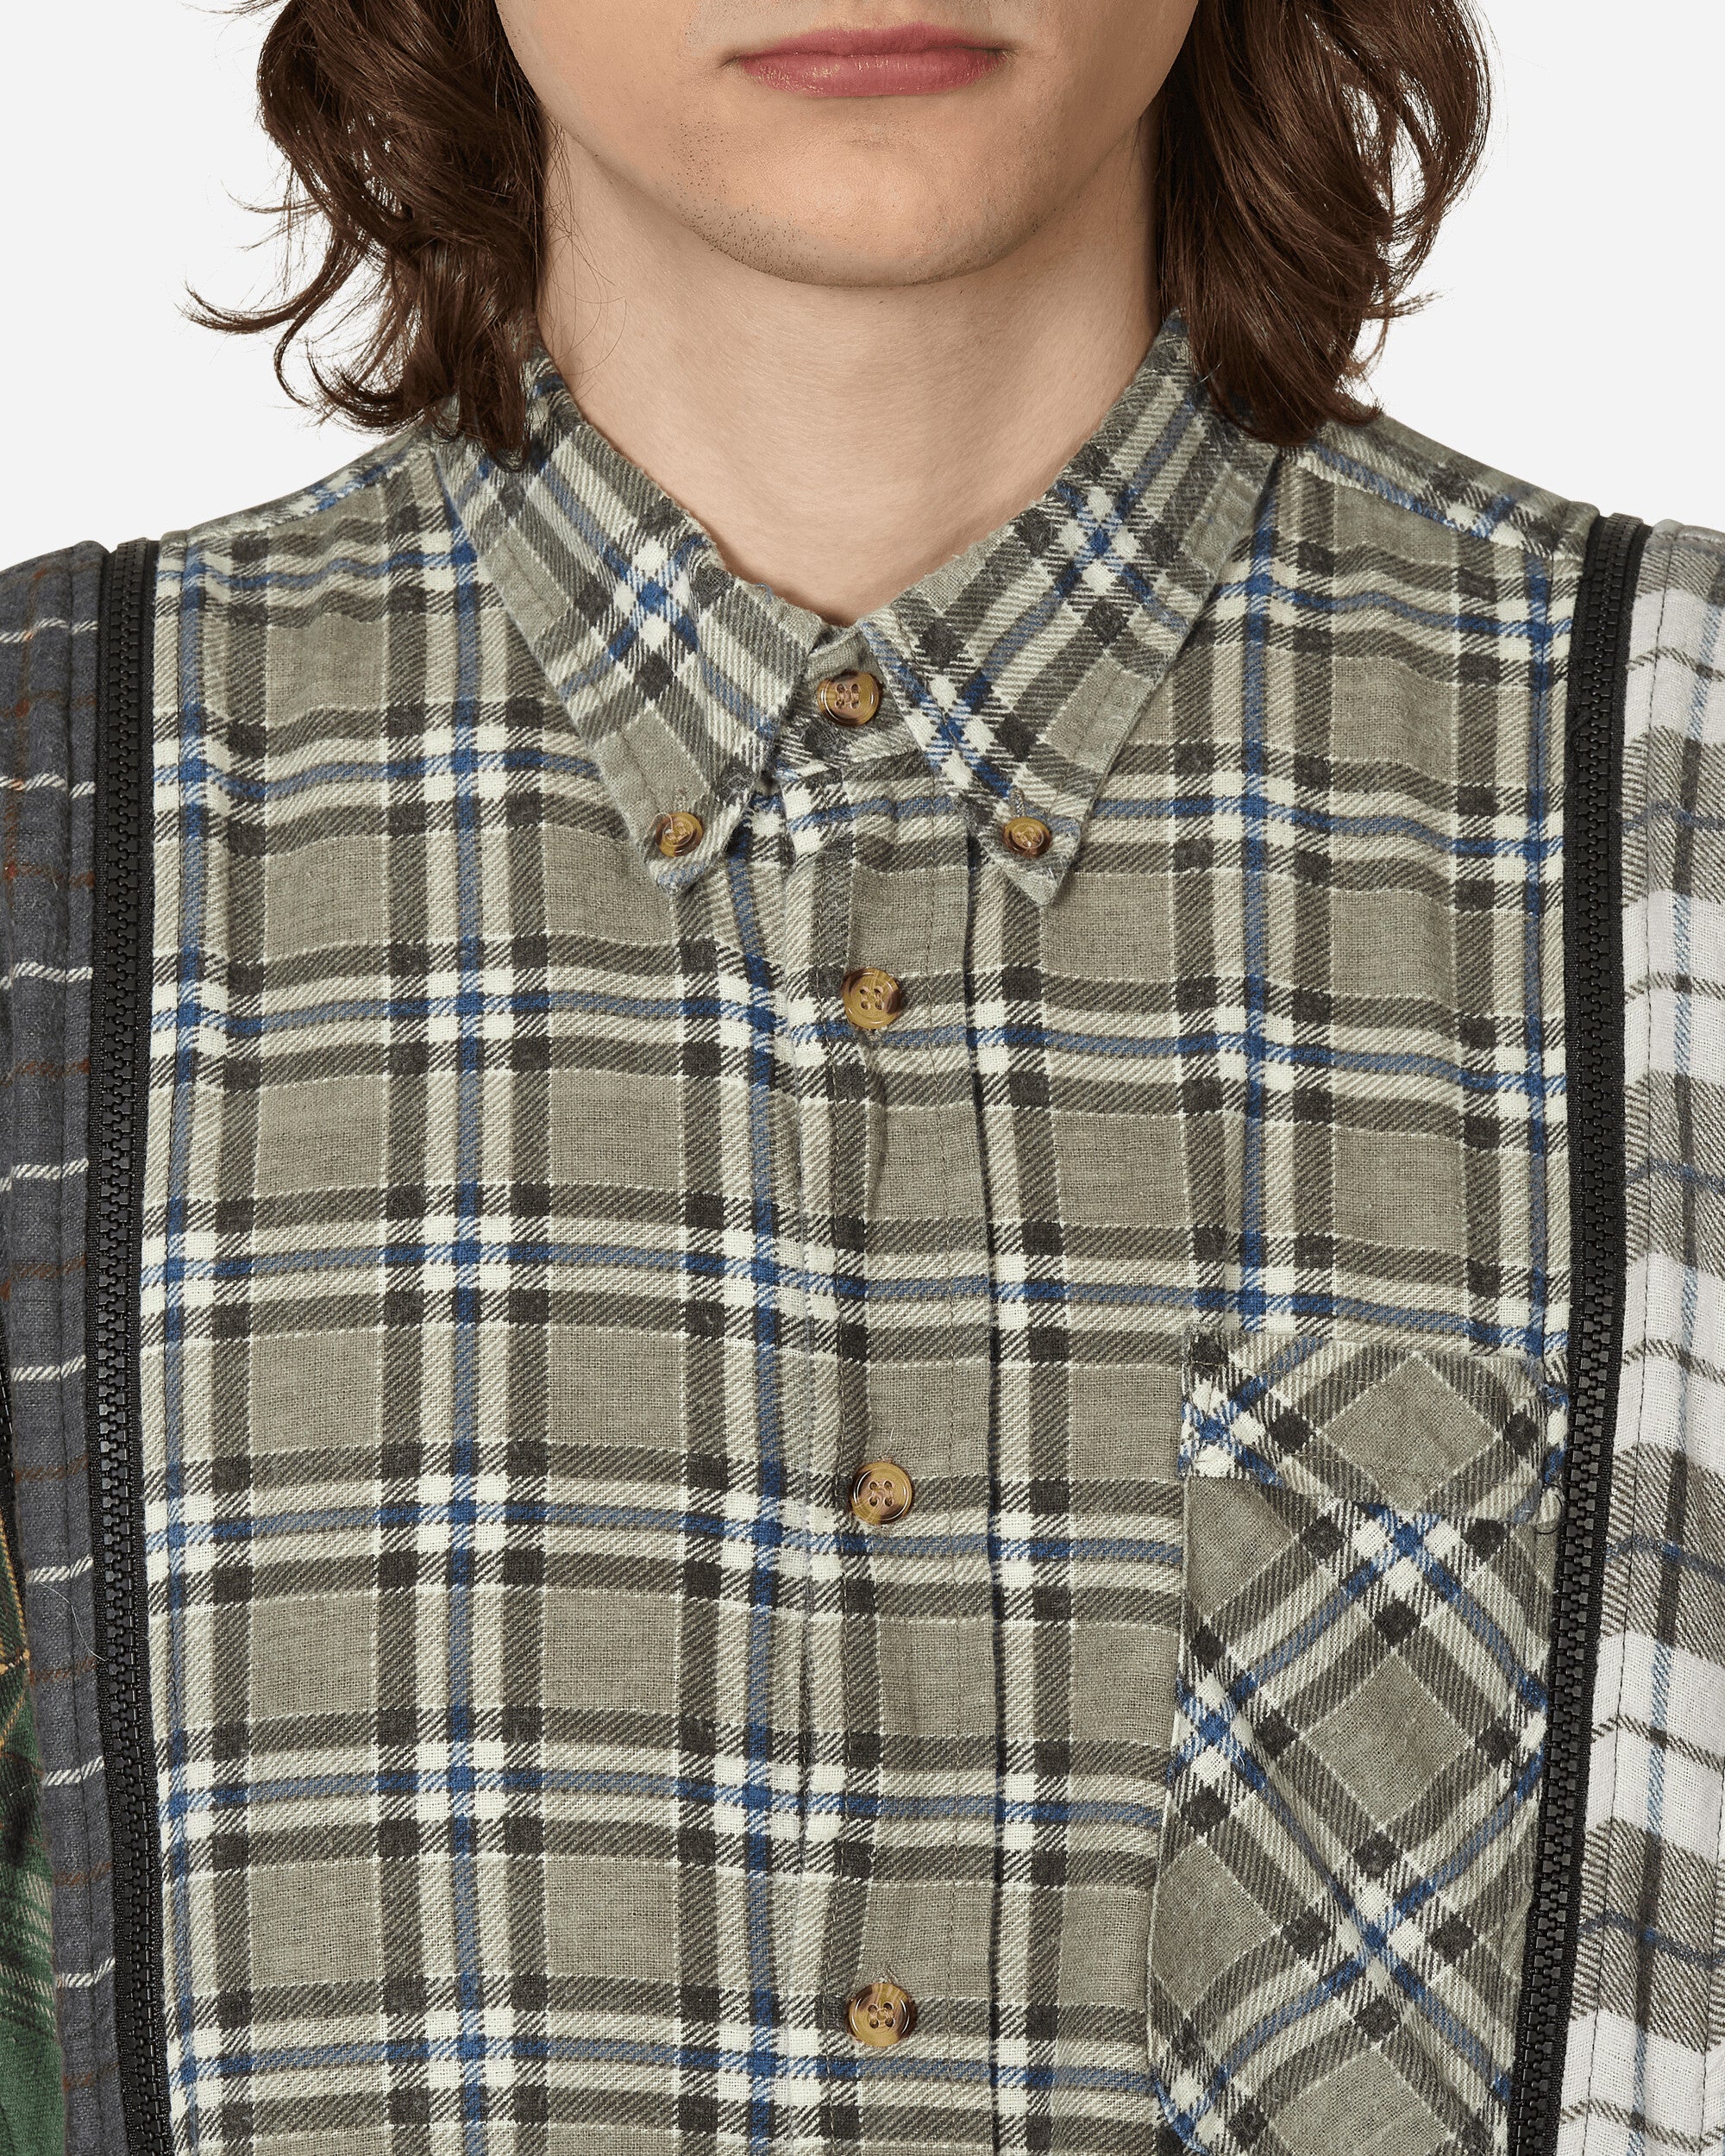 Needles Flannel Shirt - 7 Cuts Zipped Wide Shirt Assorted Shirts Longsleeve Shirt MR343 1012